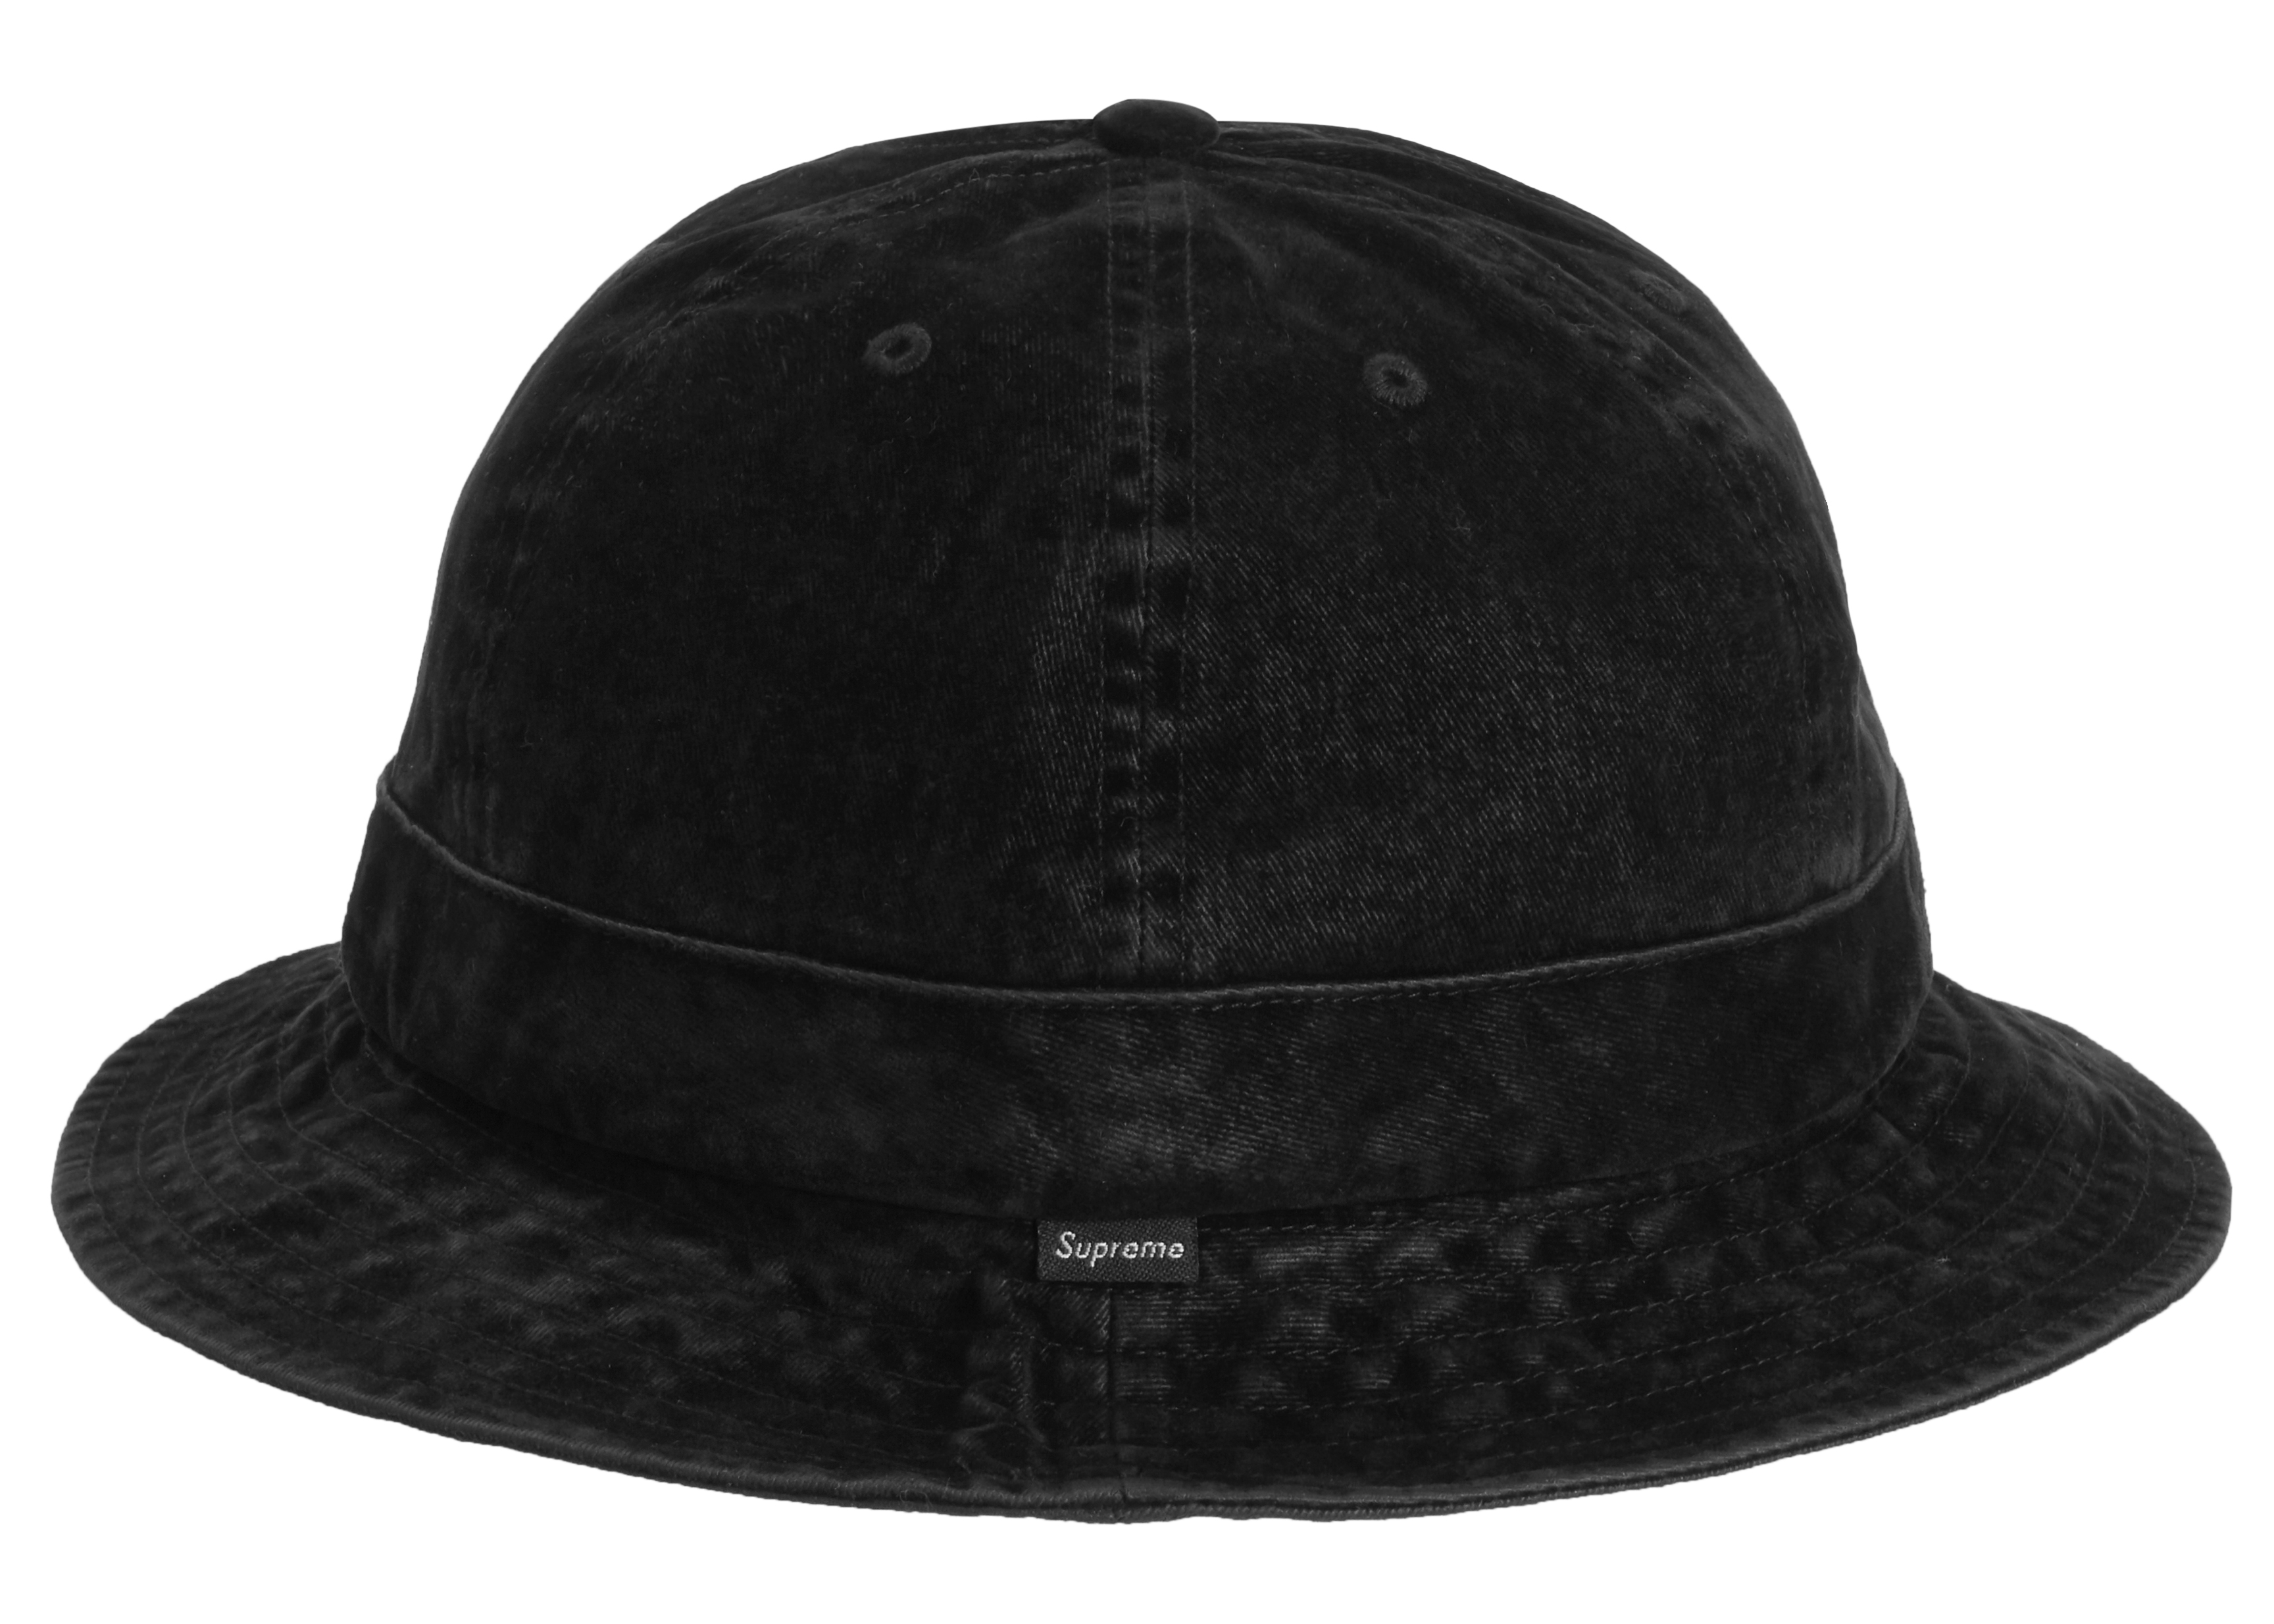 新品未使用supreme supreme Washed Velvet Bell Hat